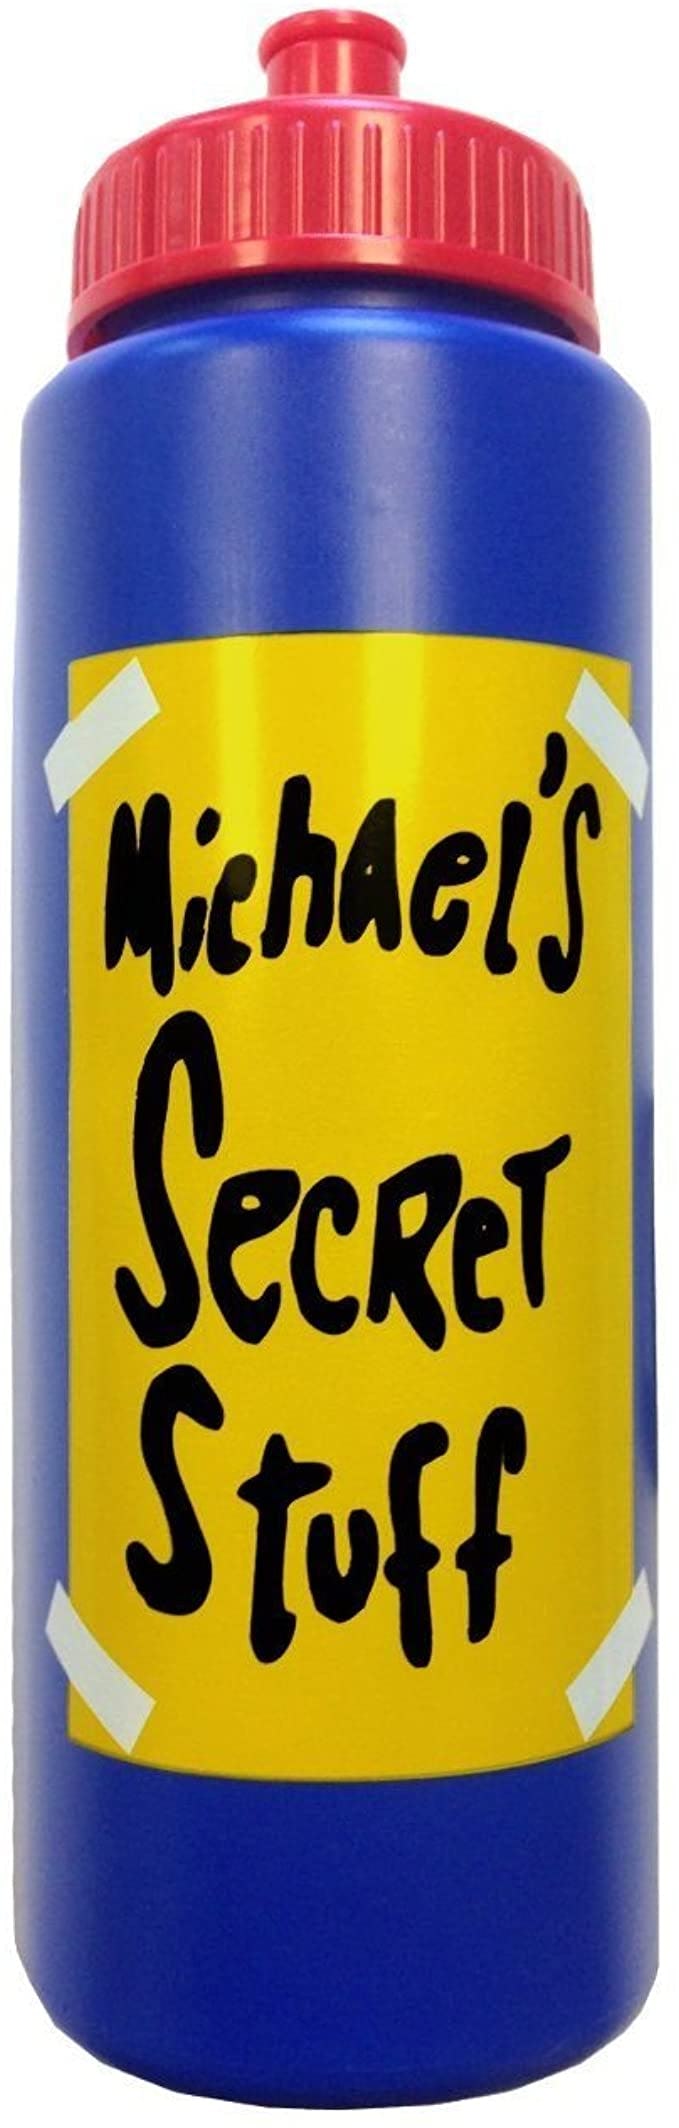 Michael's Secret Stuff Water Bottle